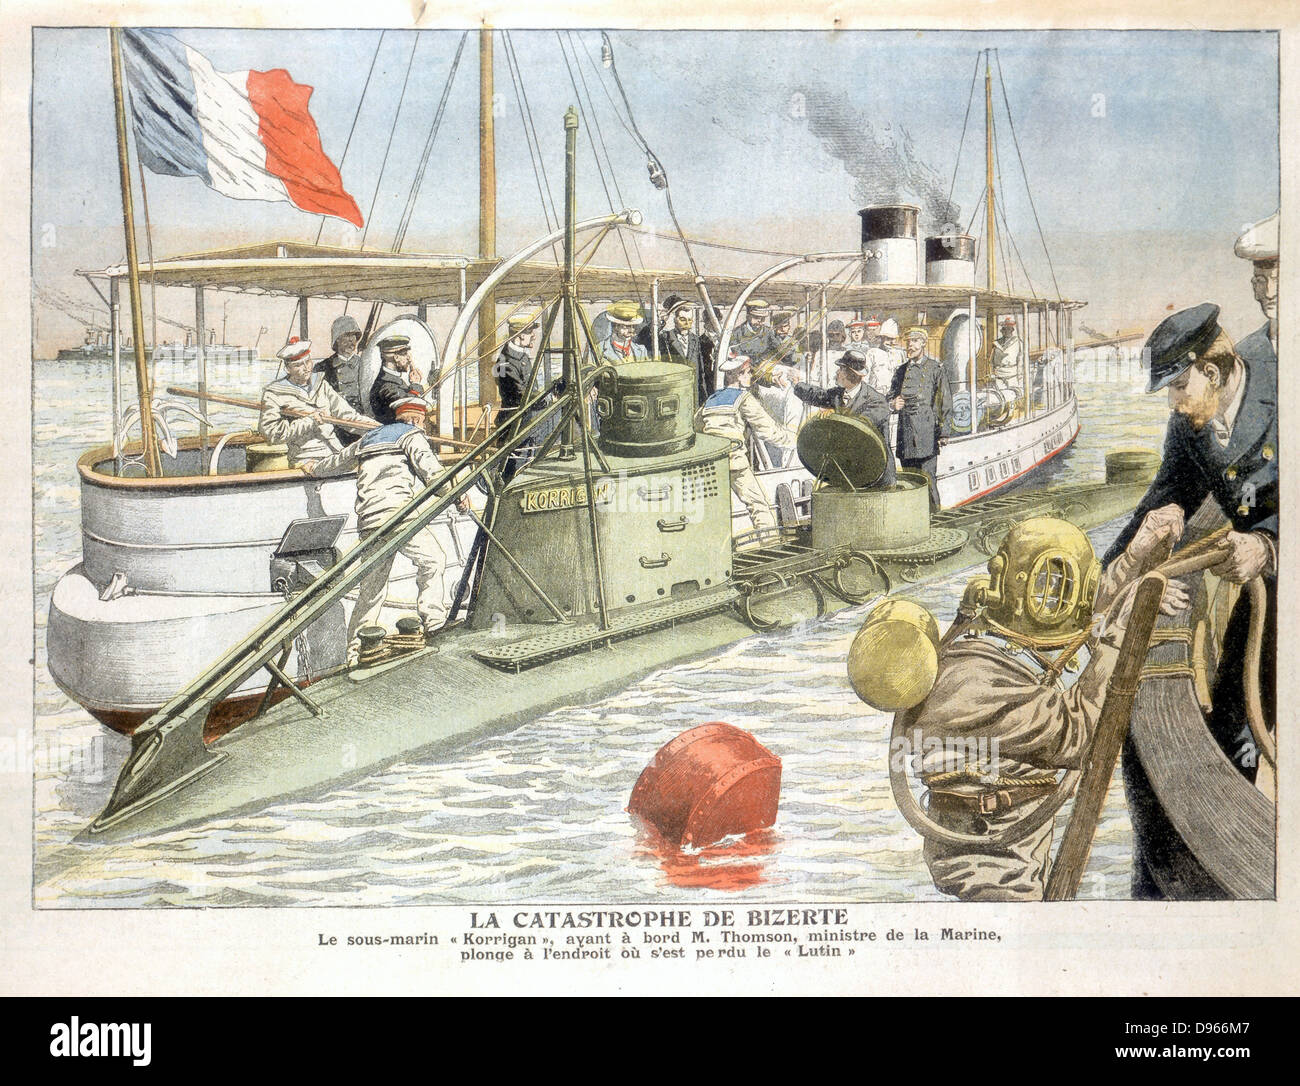 Ministre de la marine française de faire une plongée dans le sous-marin "Korrigan" pour examiner l'épave de son navire-jumeau "lutin". À partir de 'Le Petit Journal', Paris, 1906. Banque D'Images